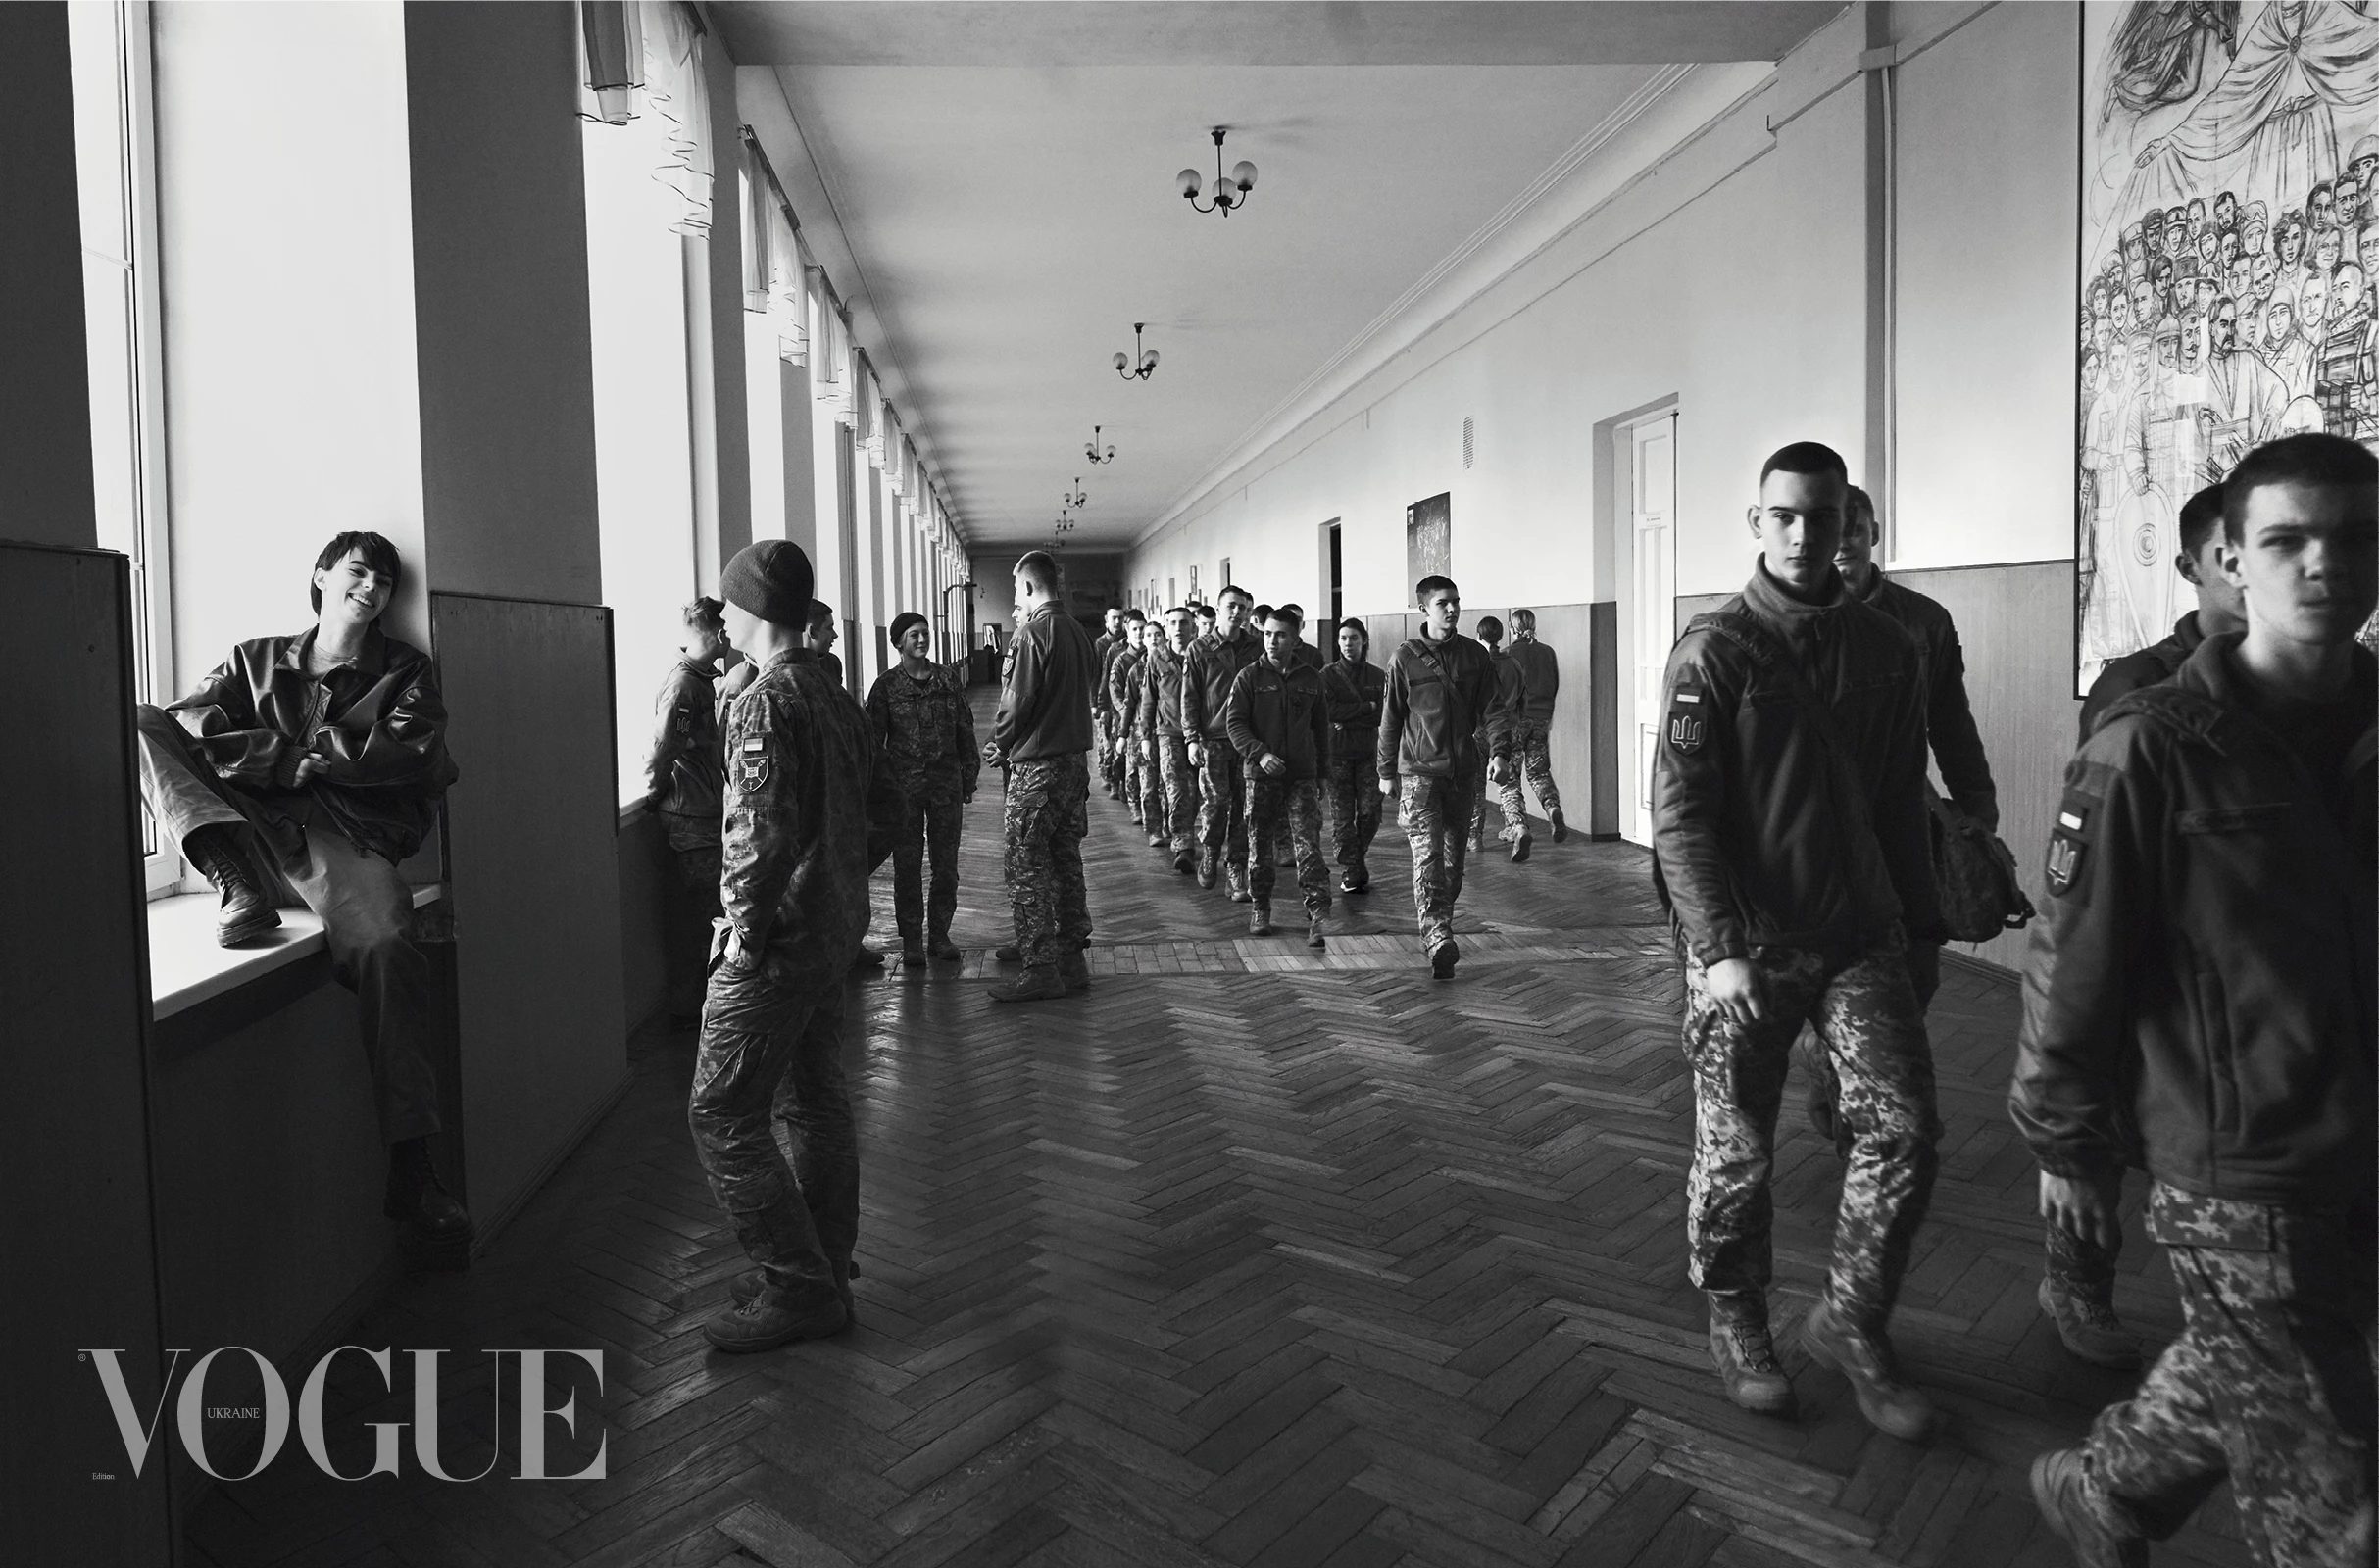 Курсанти Військового ліцею імені Івана Богуна. Фото: Бретт Ллойд, Vogue, Україна